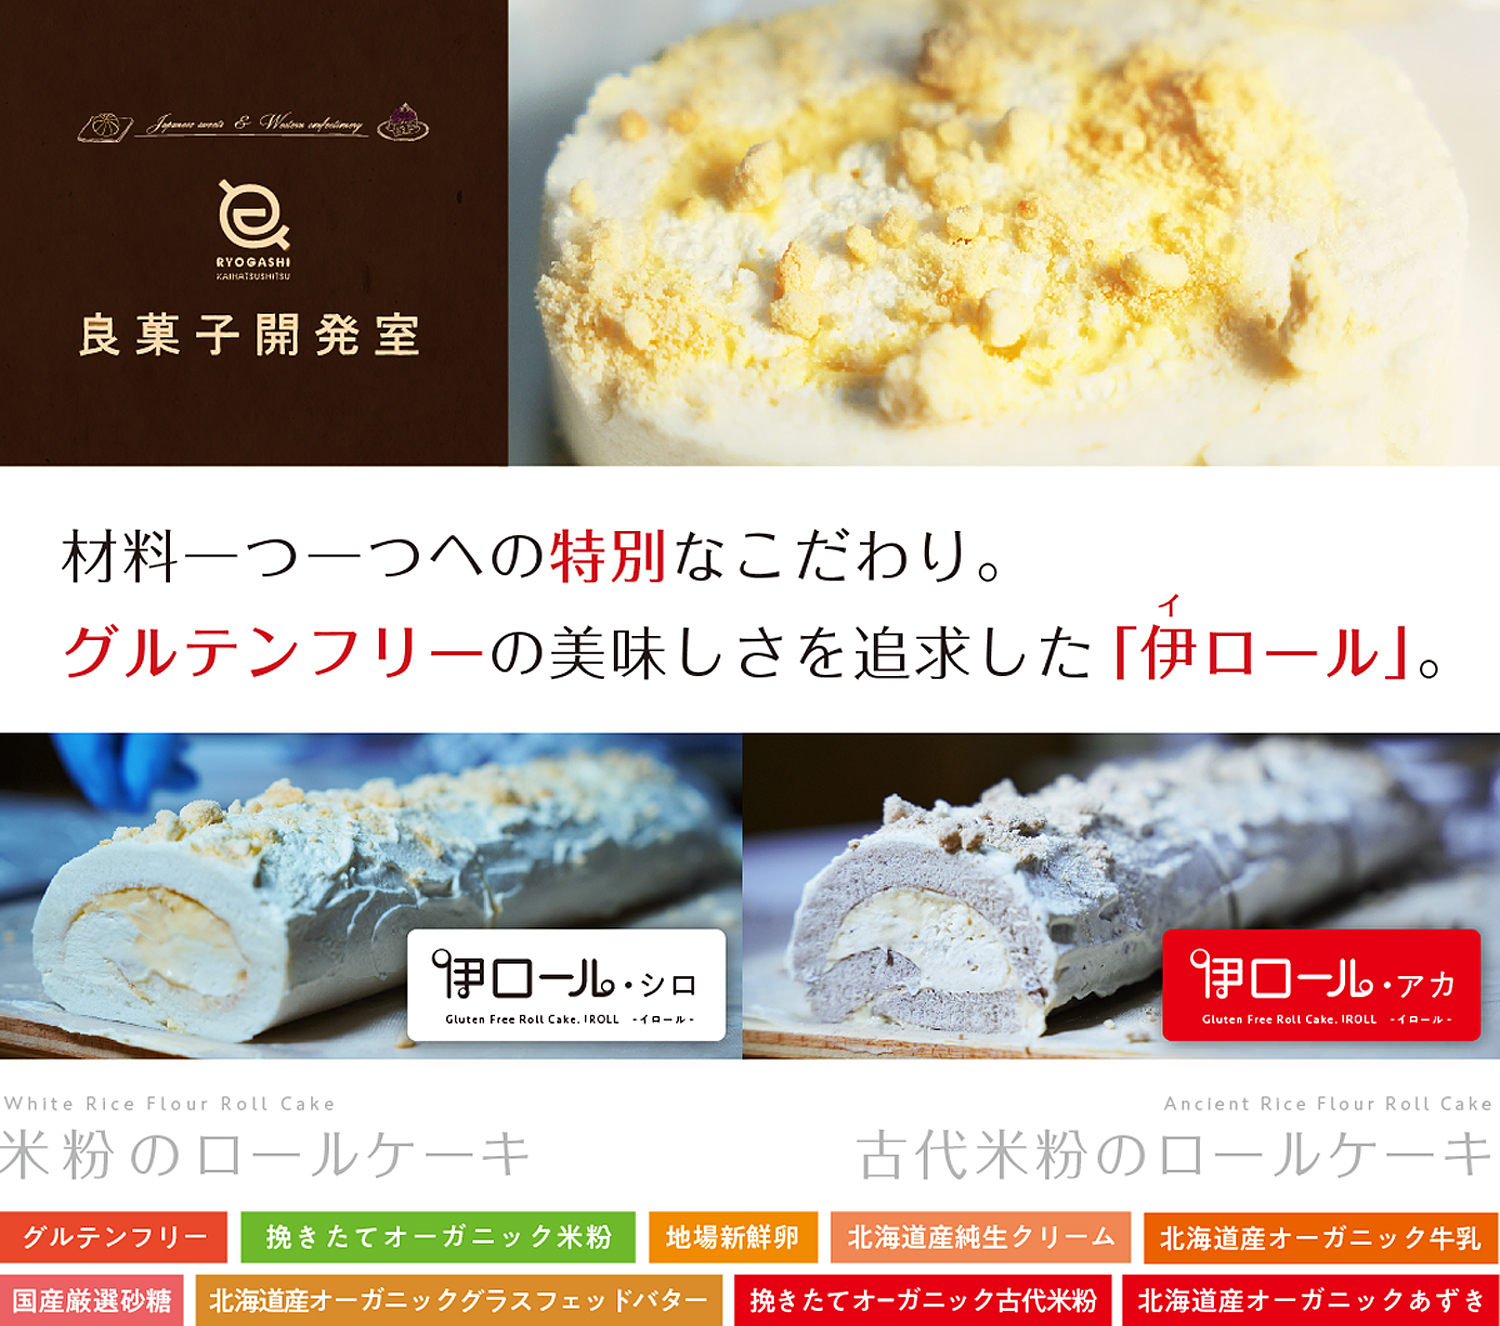 【愛知県幸田町】7月6日リニューアルオープン。ここでしか食べられない!?スフレパンケーキのようなふわふわ食感の「おこぱん」が新登場